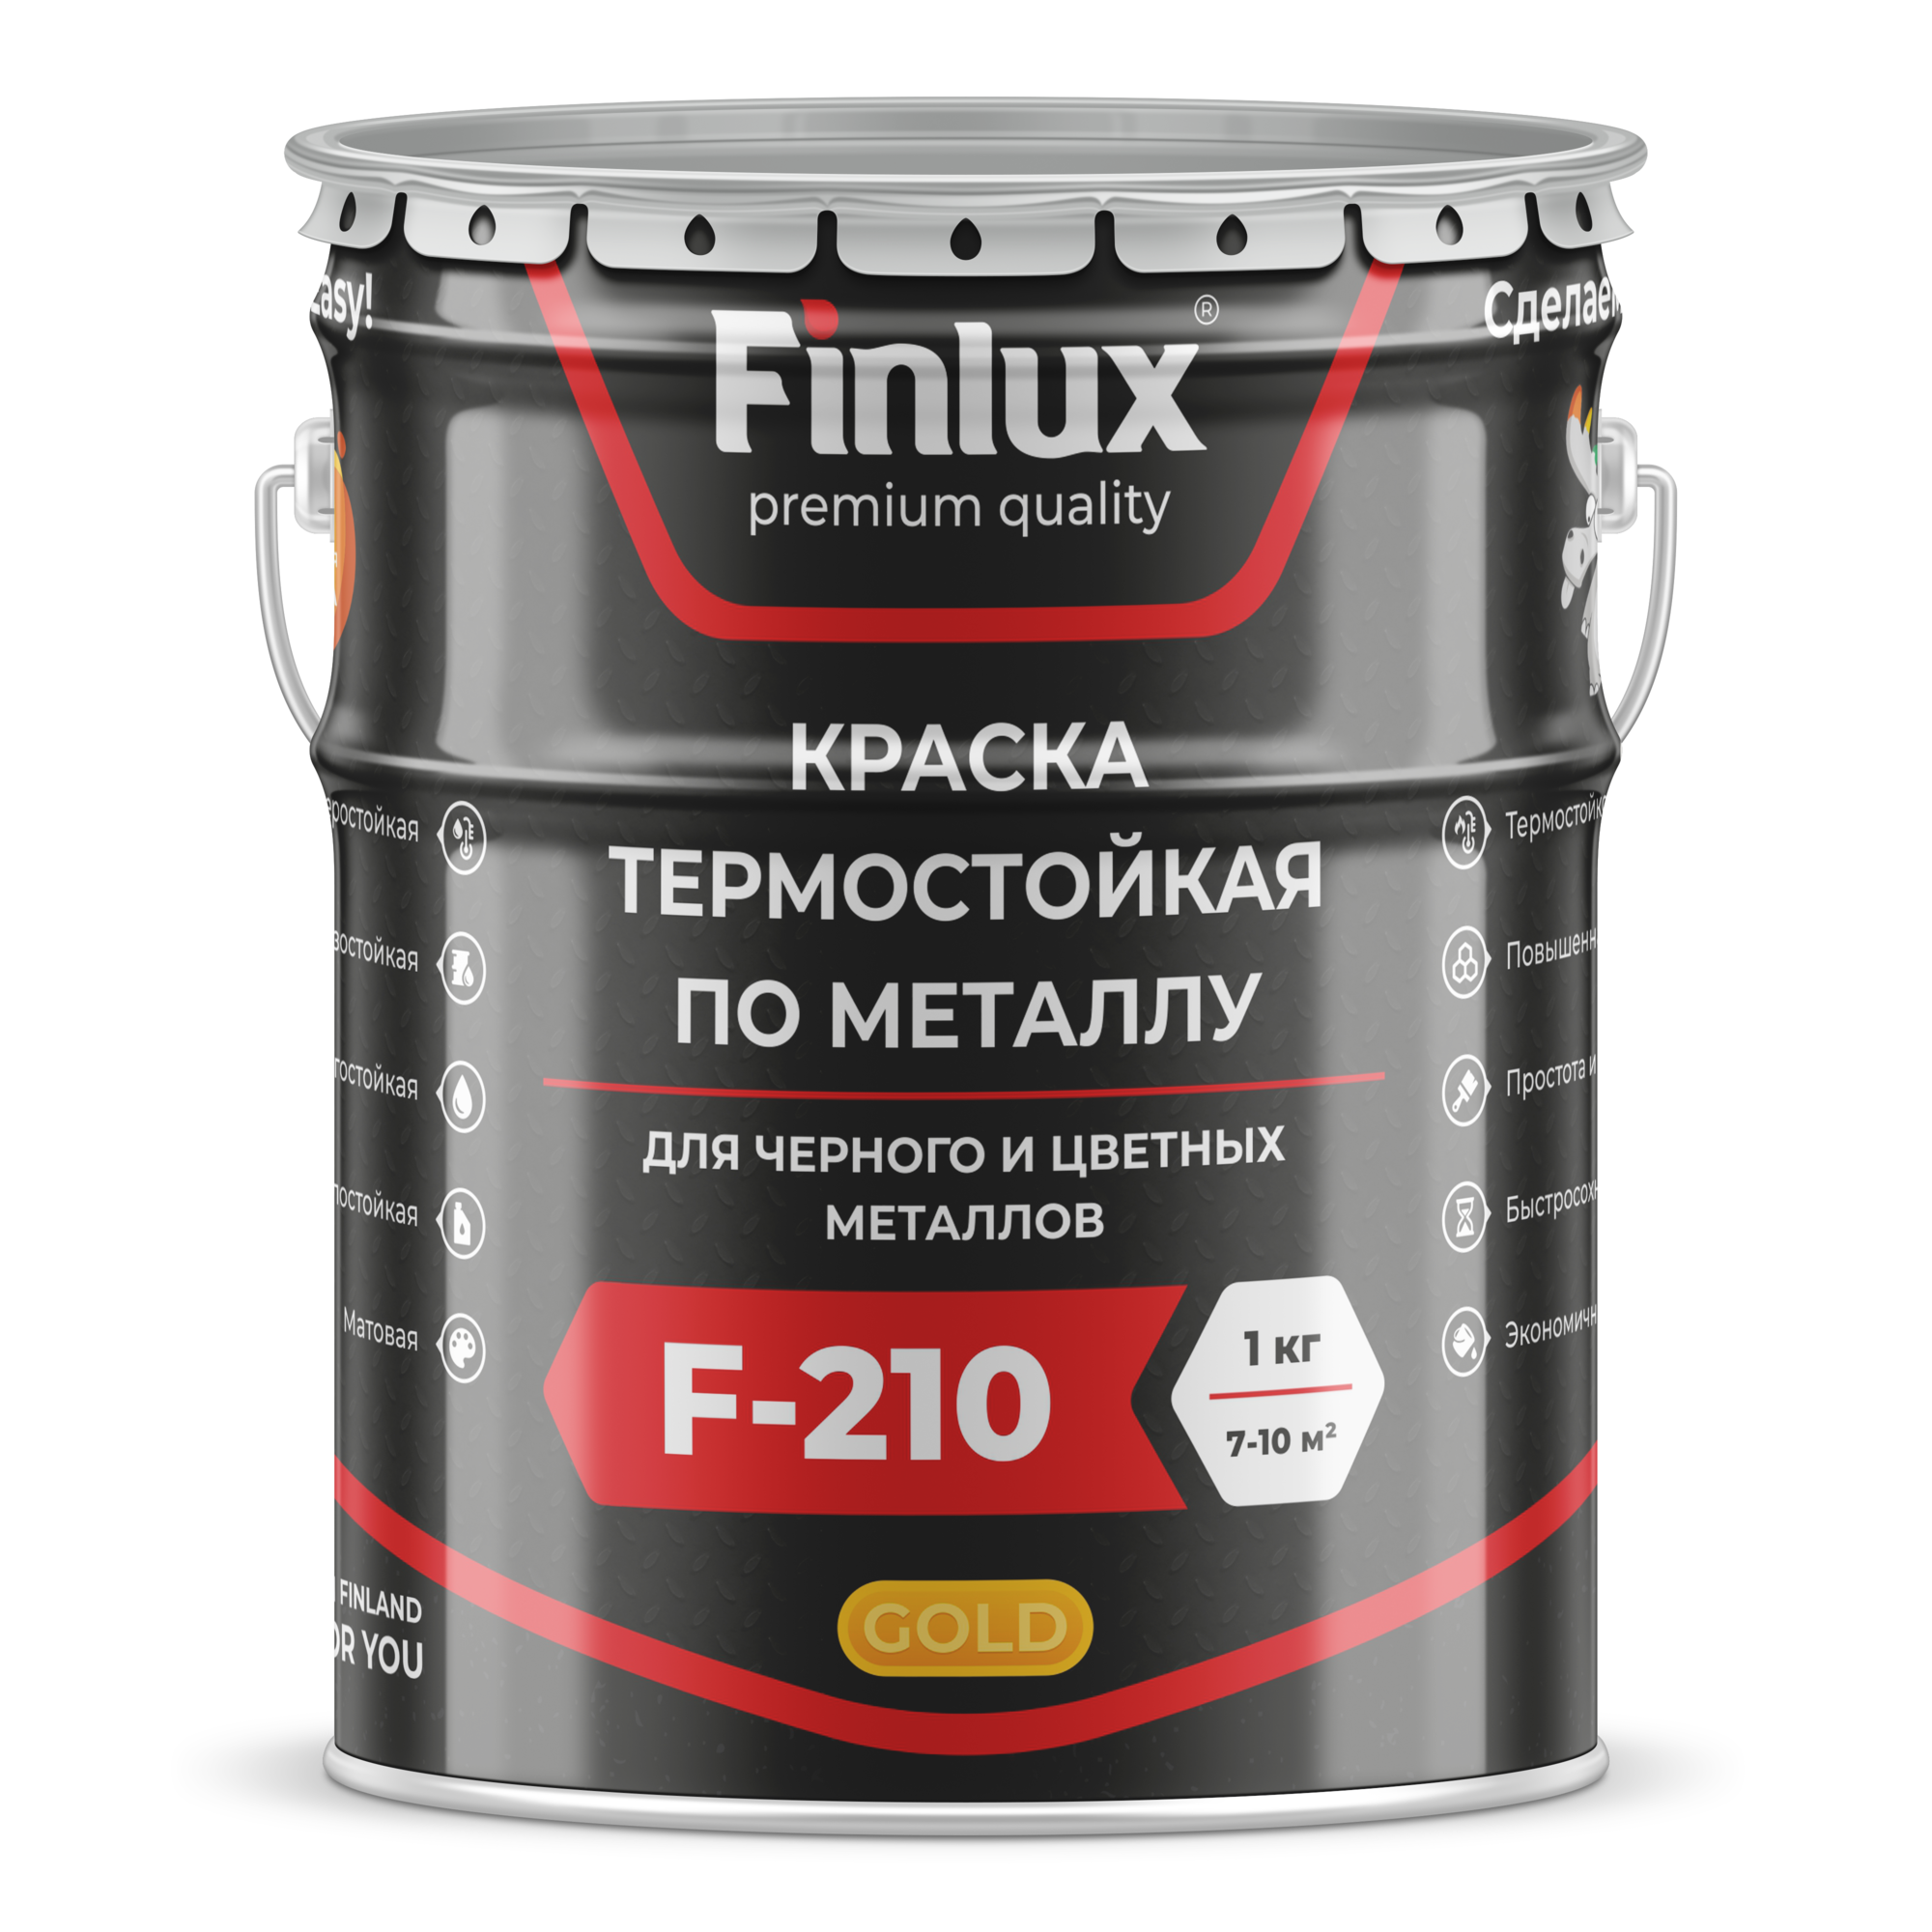 Краска термостойкая для металла Finlux ThermoStop F-210 Gold/ Финлюкс ТермоСтоп Ф-210 Голд ral 9005, 10 кг